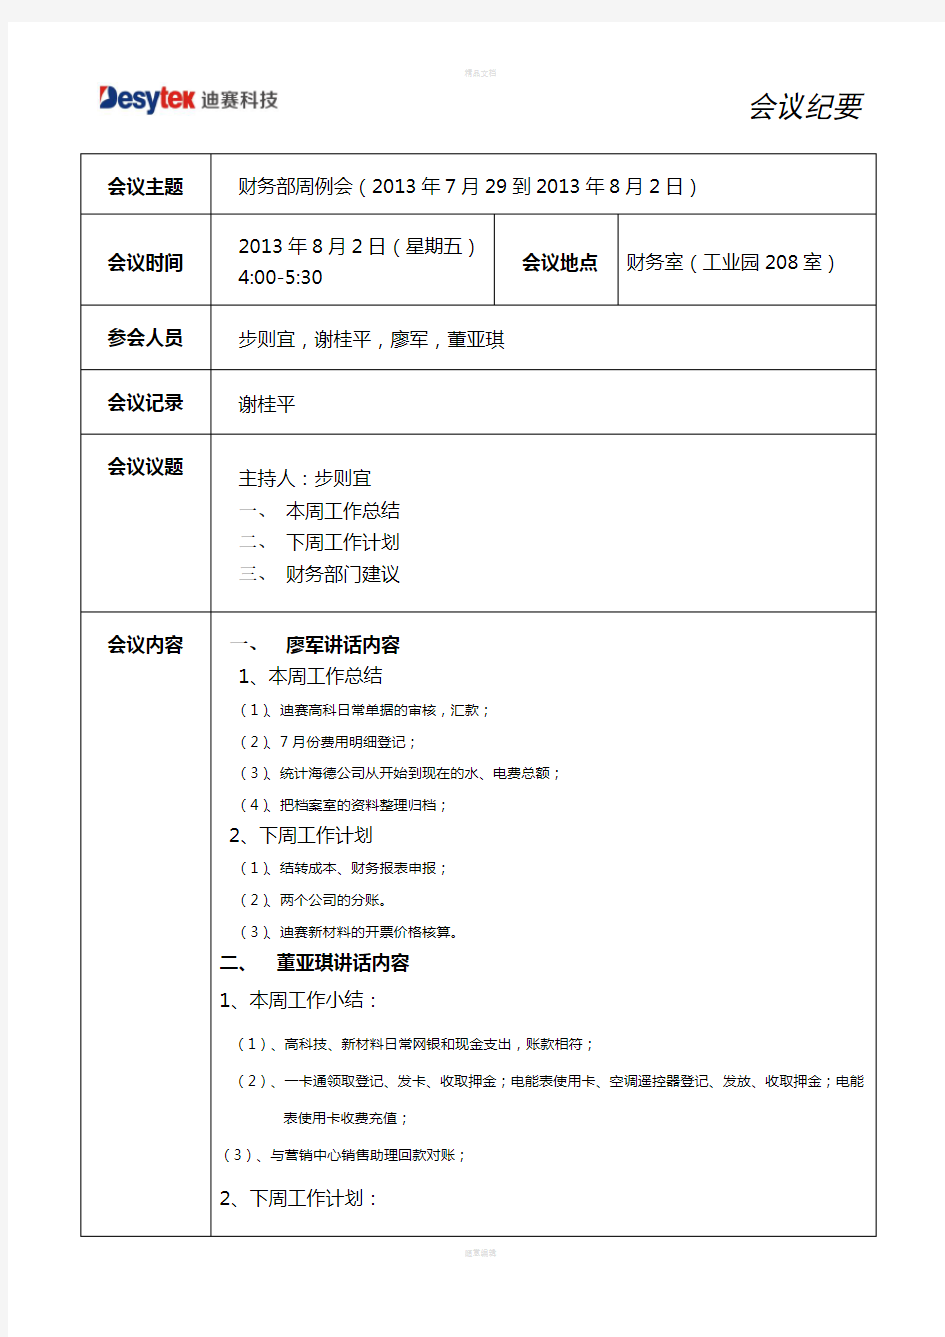 财务部会议纪要周例会(2013.729-2013.8.2)